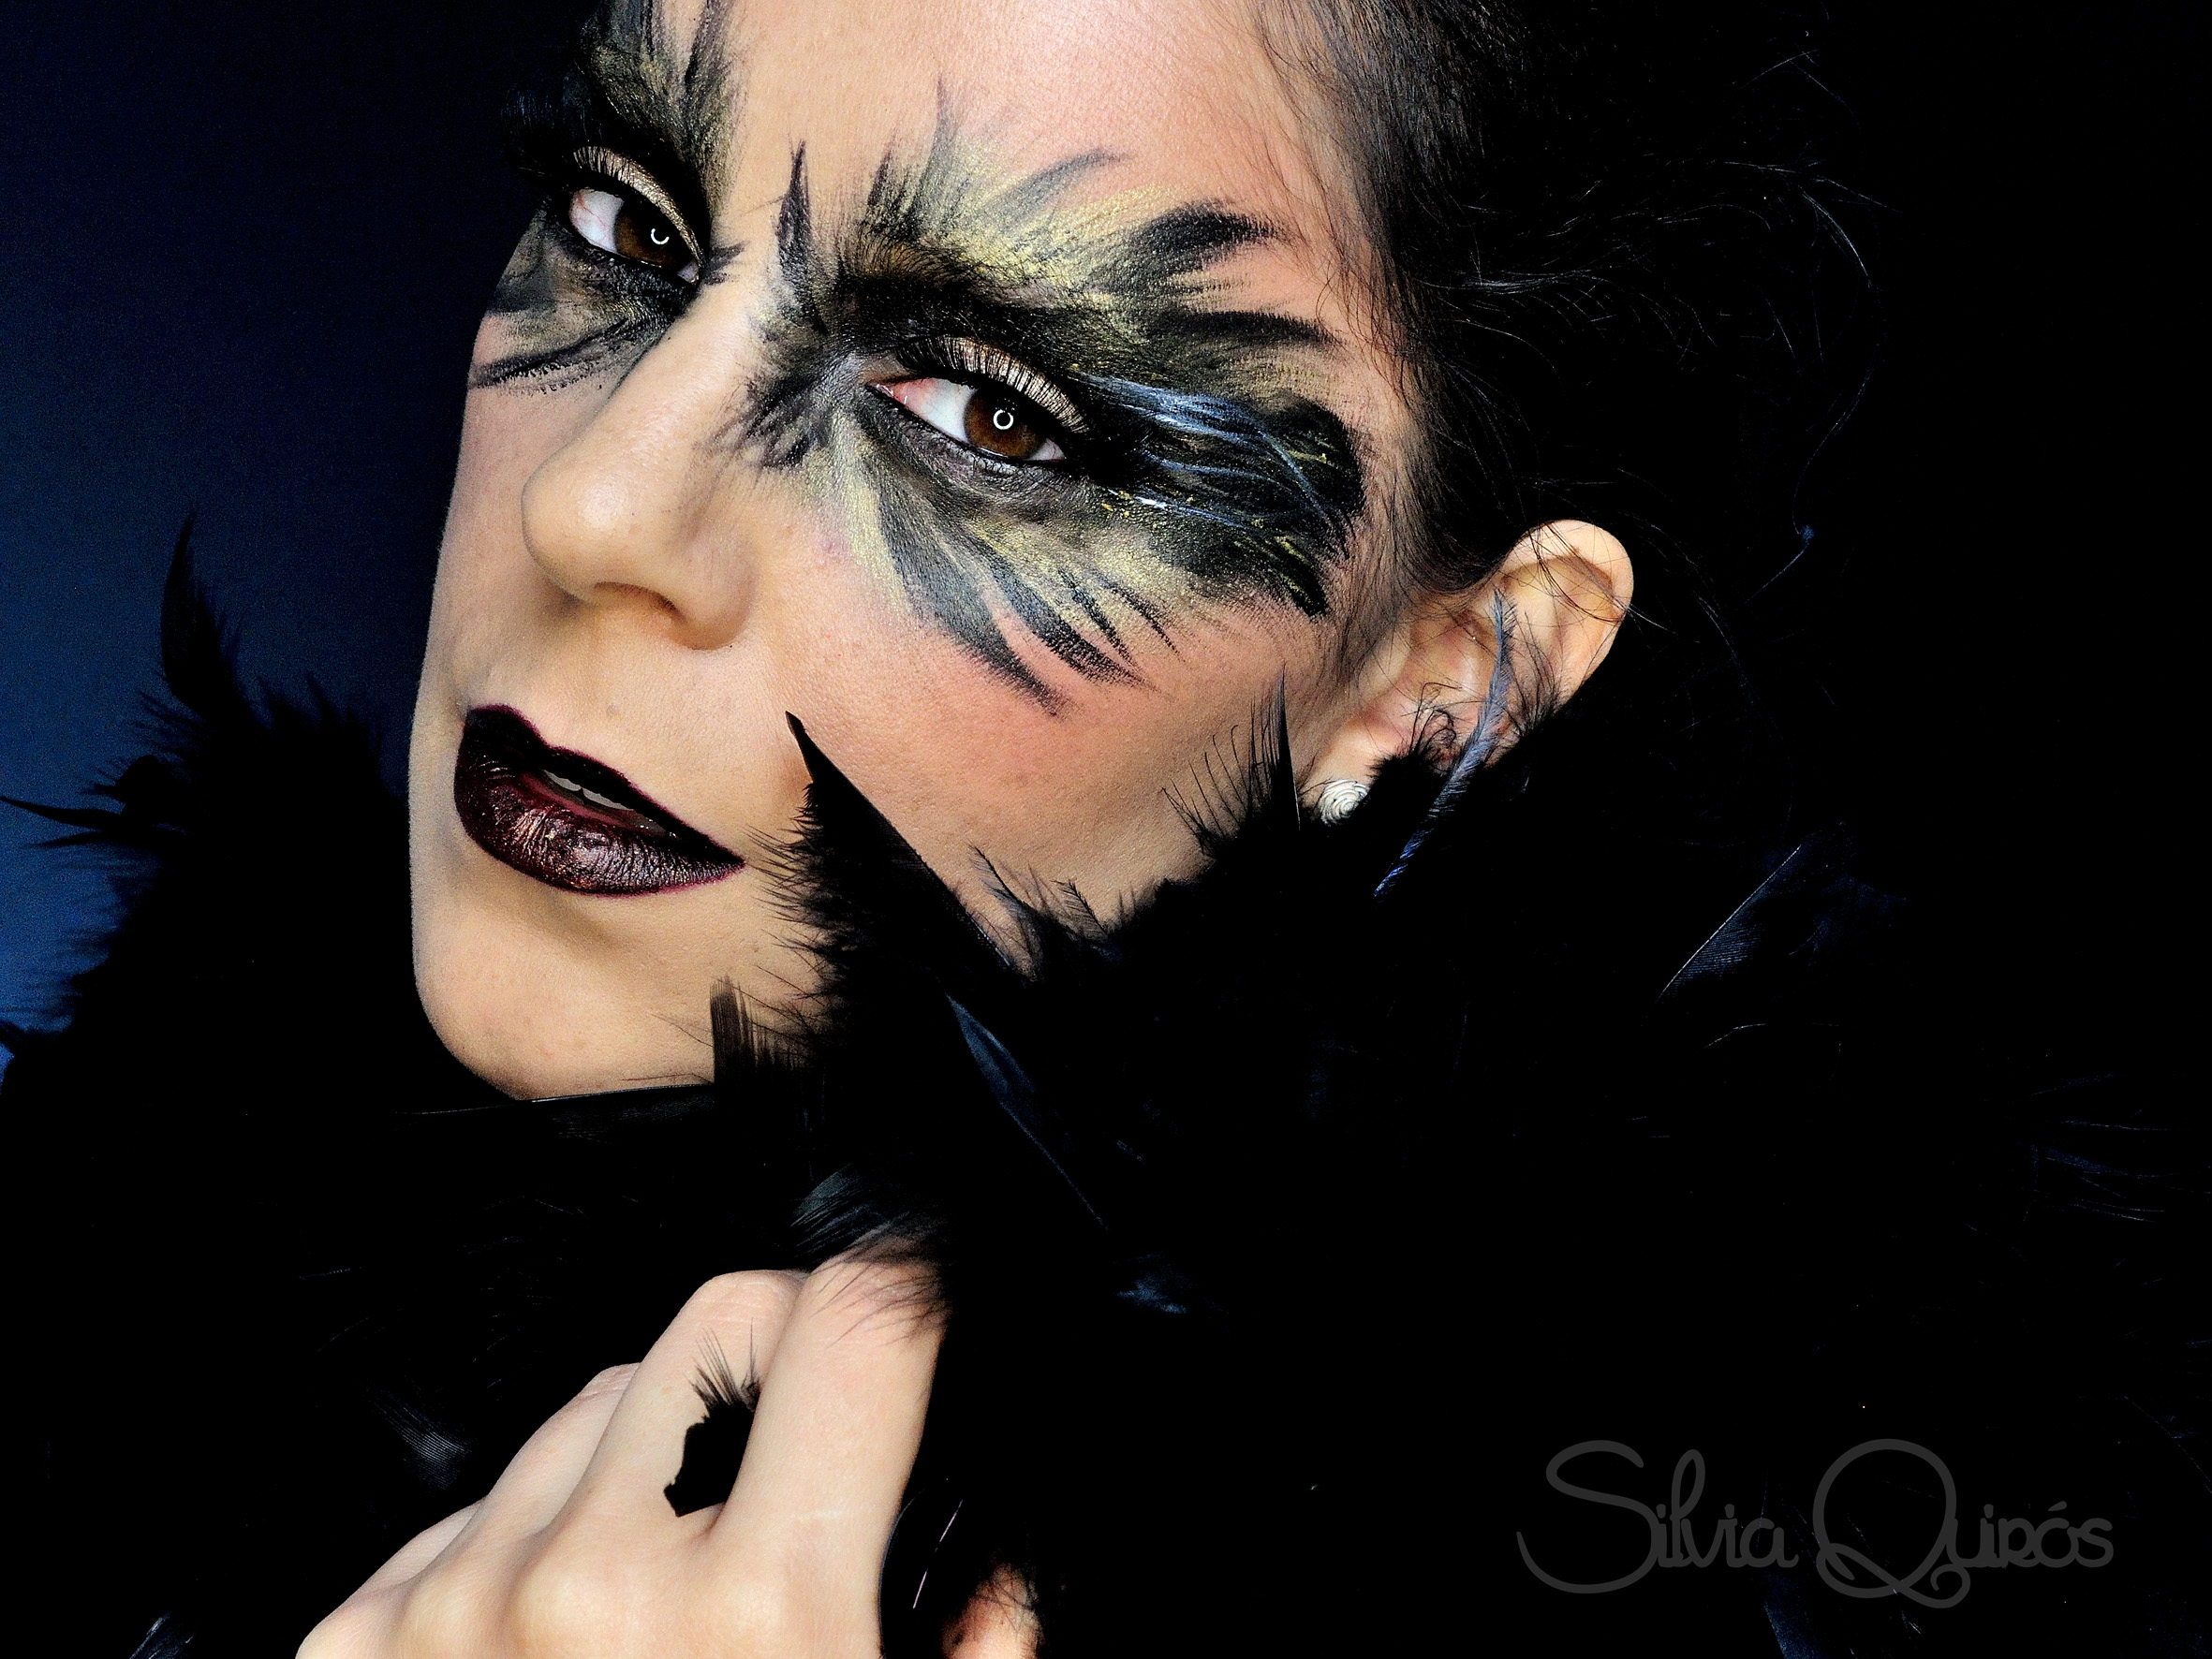 Queen Black Raven makeup tutorial.